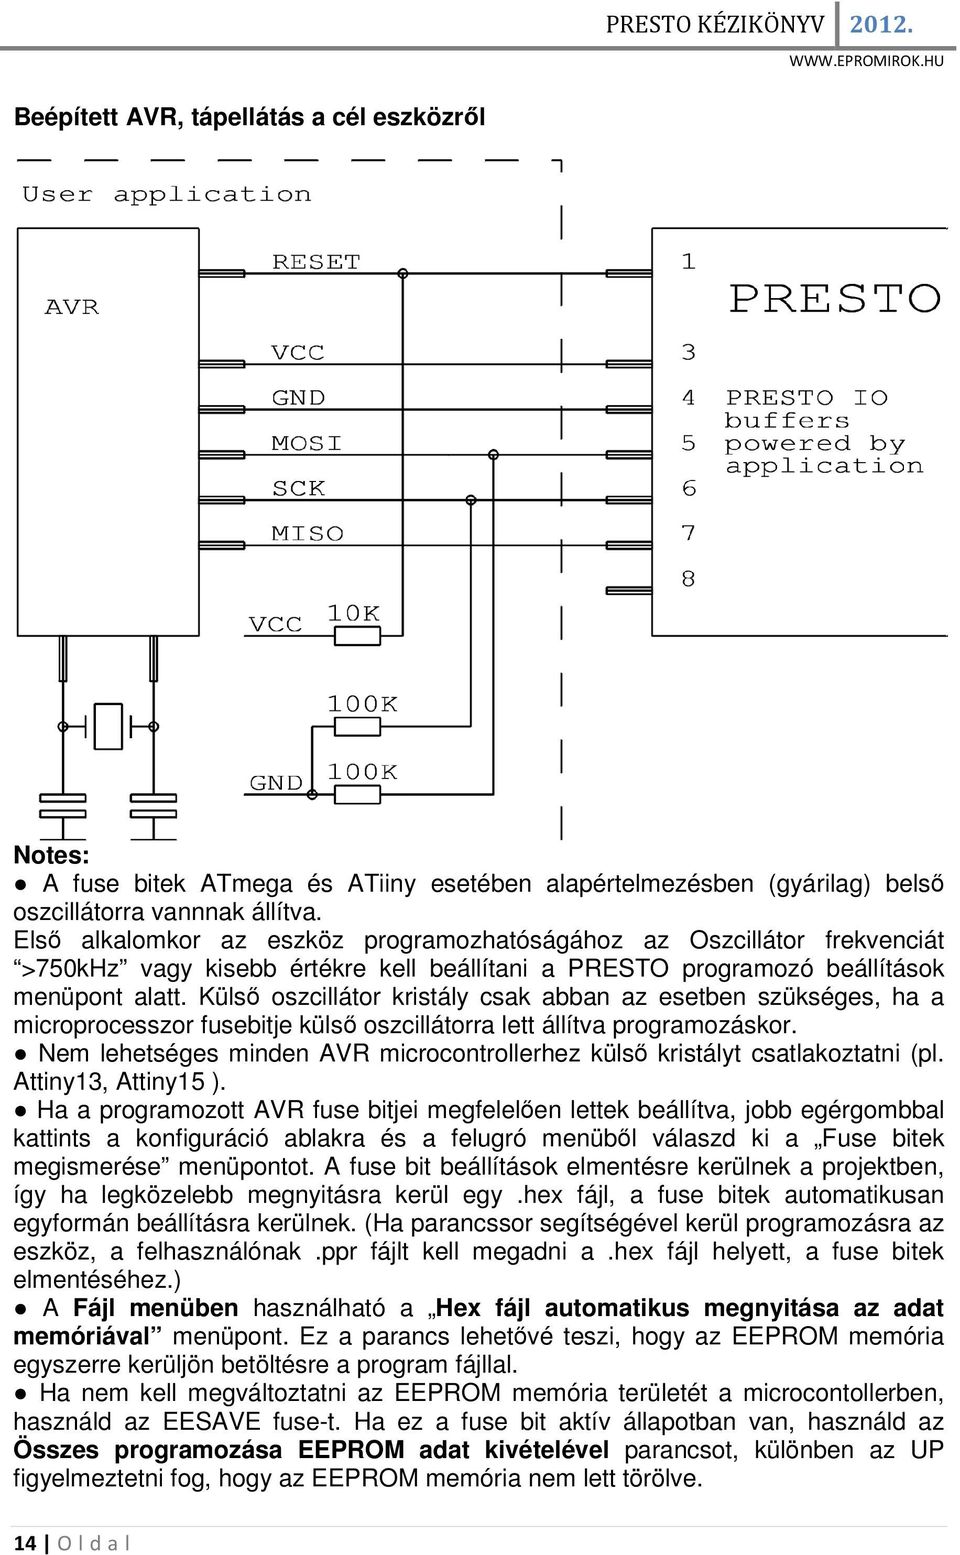 Külső oszcillátor kristály csak abban az esetben szükséges, ha a microprocesszor fusebitje külső oszcillátorra lett állítva programozáskor.